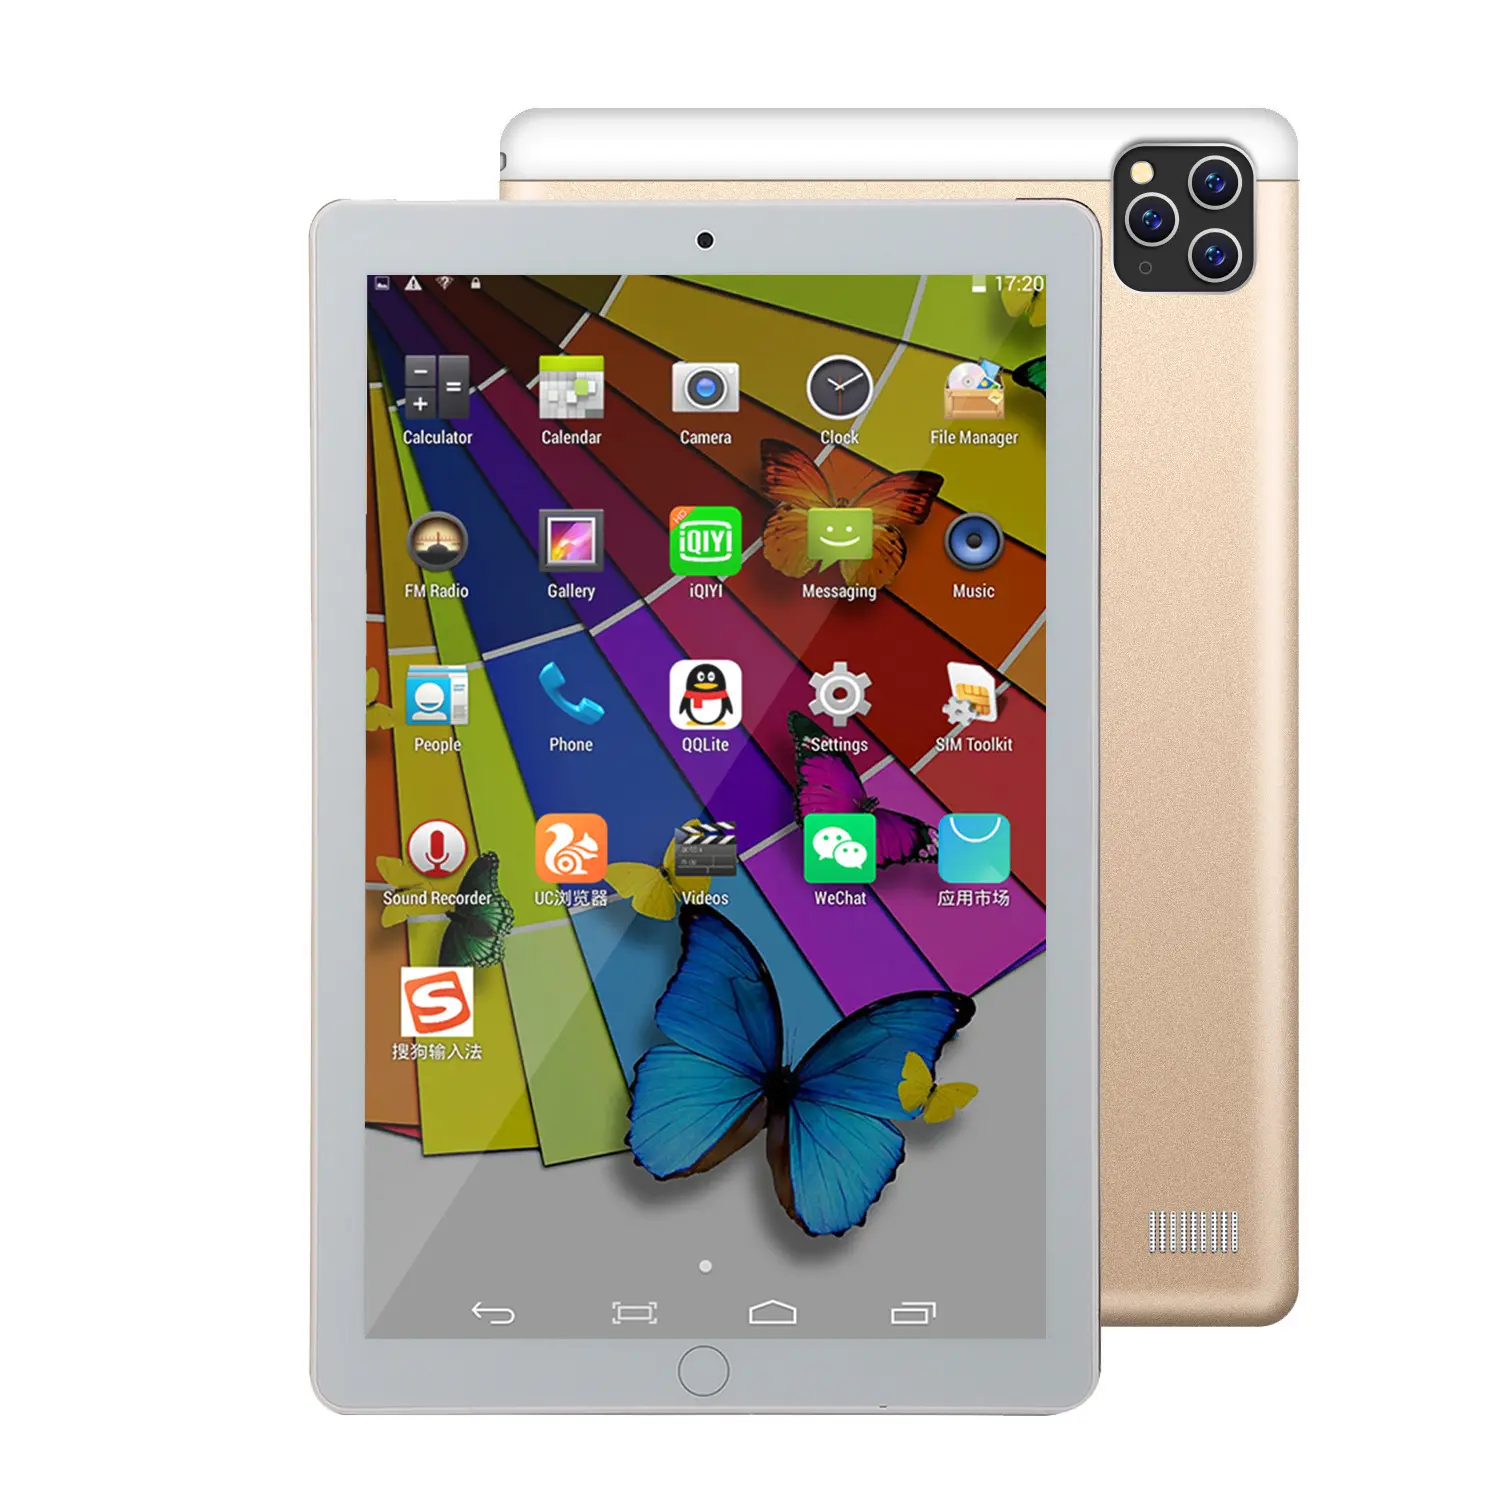 OEM a buon mercato scheda 8.1 Android da 10 pollici telefono cellulare Quad Core Tablet Pc con 3G telefono telefono cellulare Tablet Dual Sim Card Slot Wifi